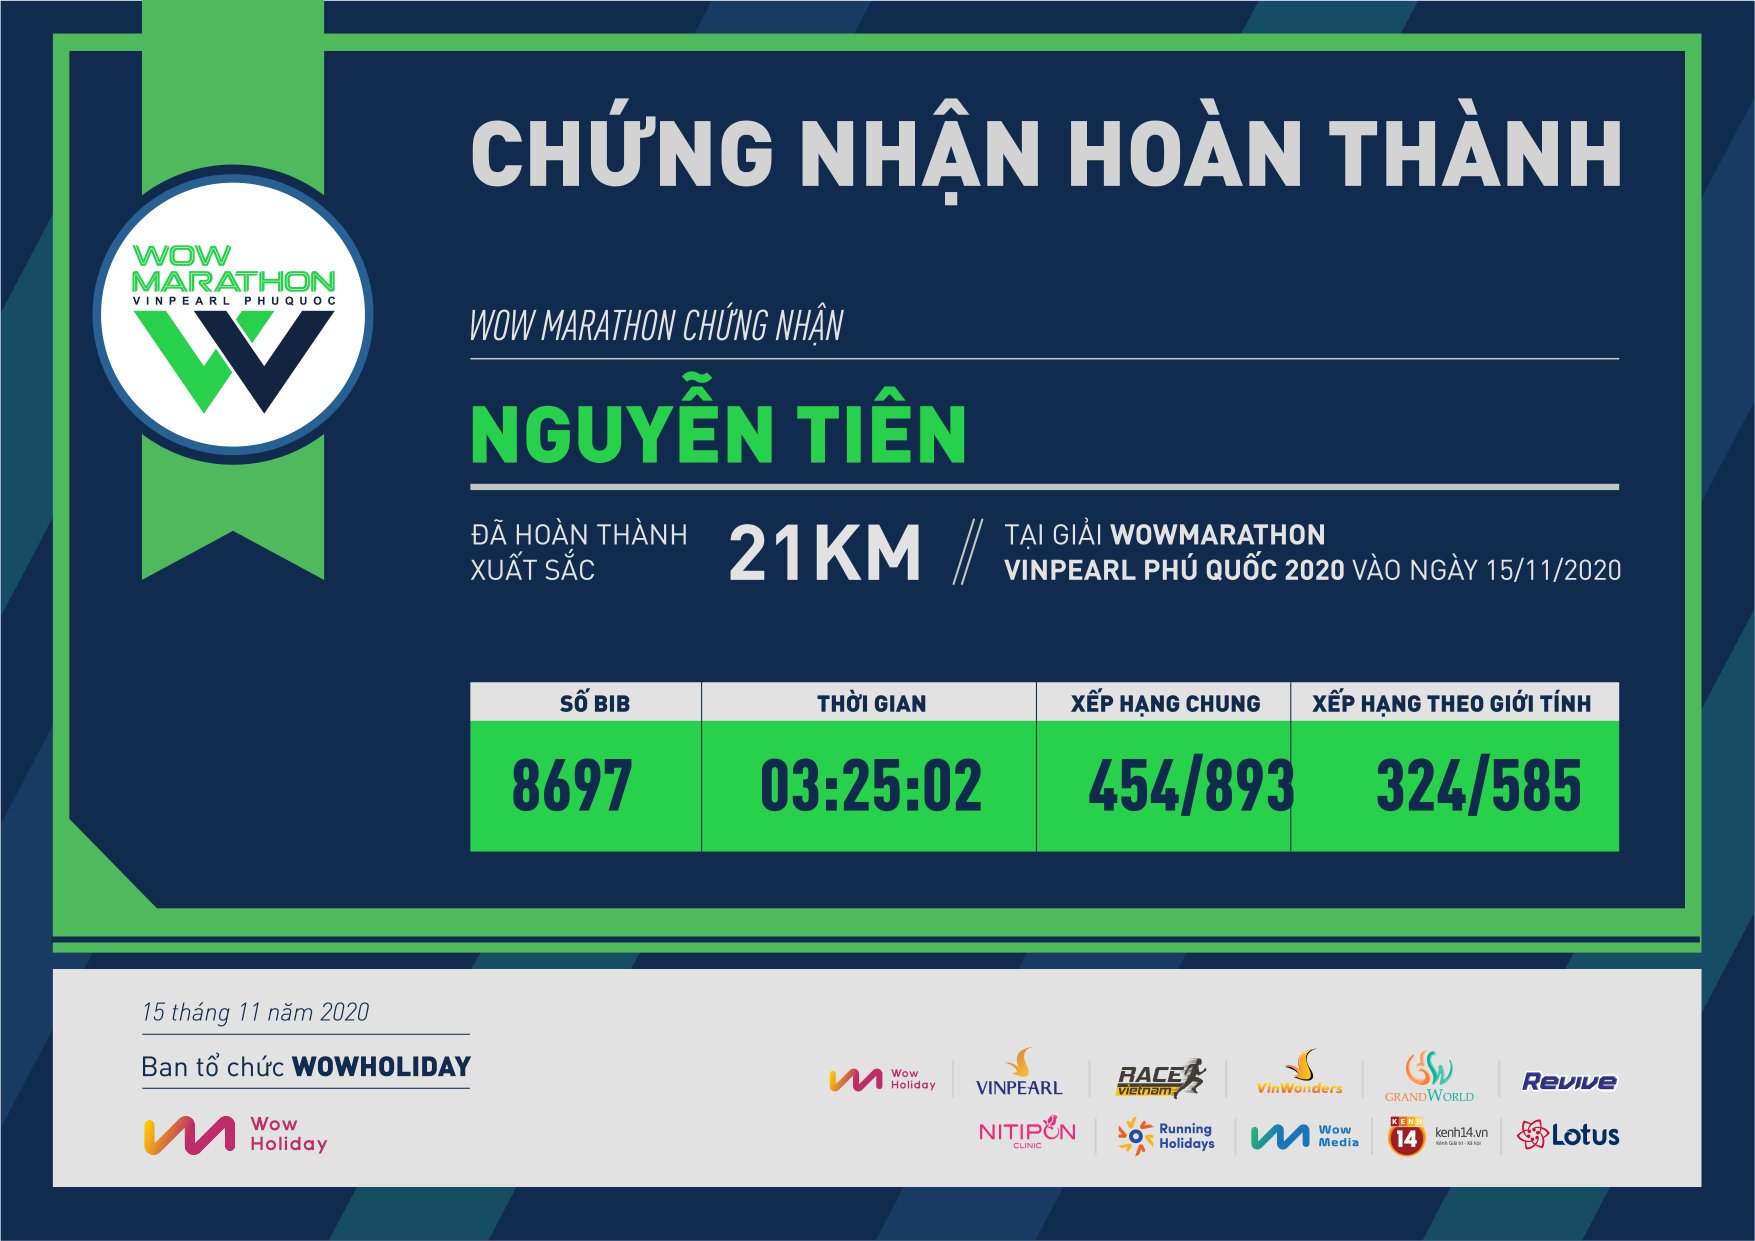 8697 - Nguyễn Tiên